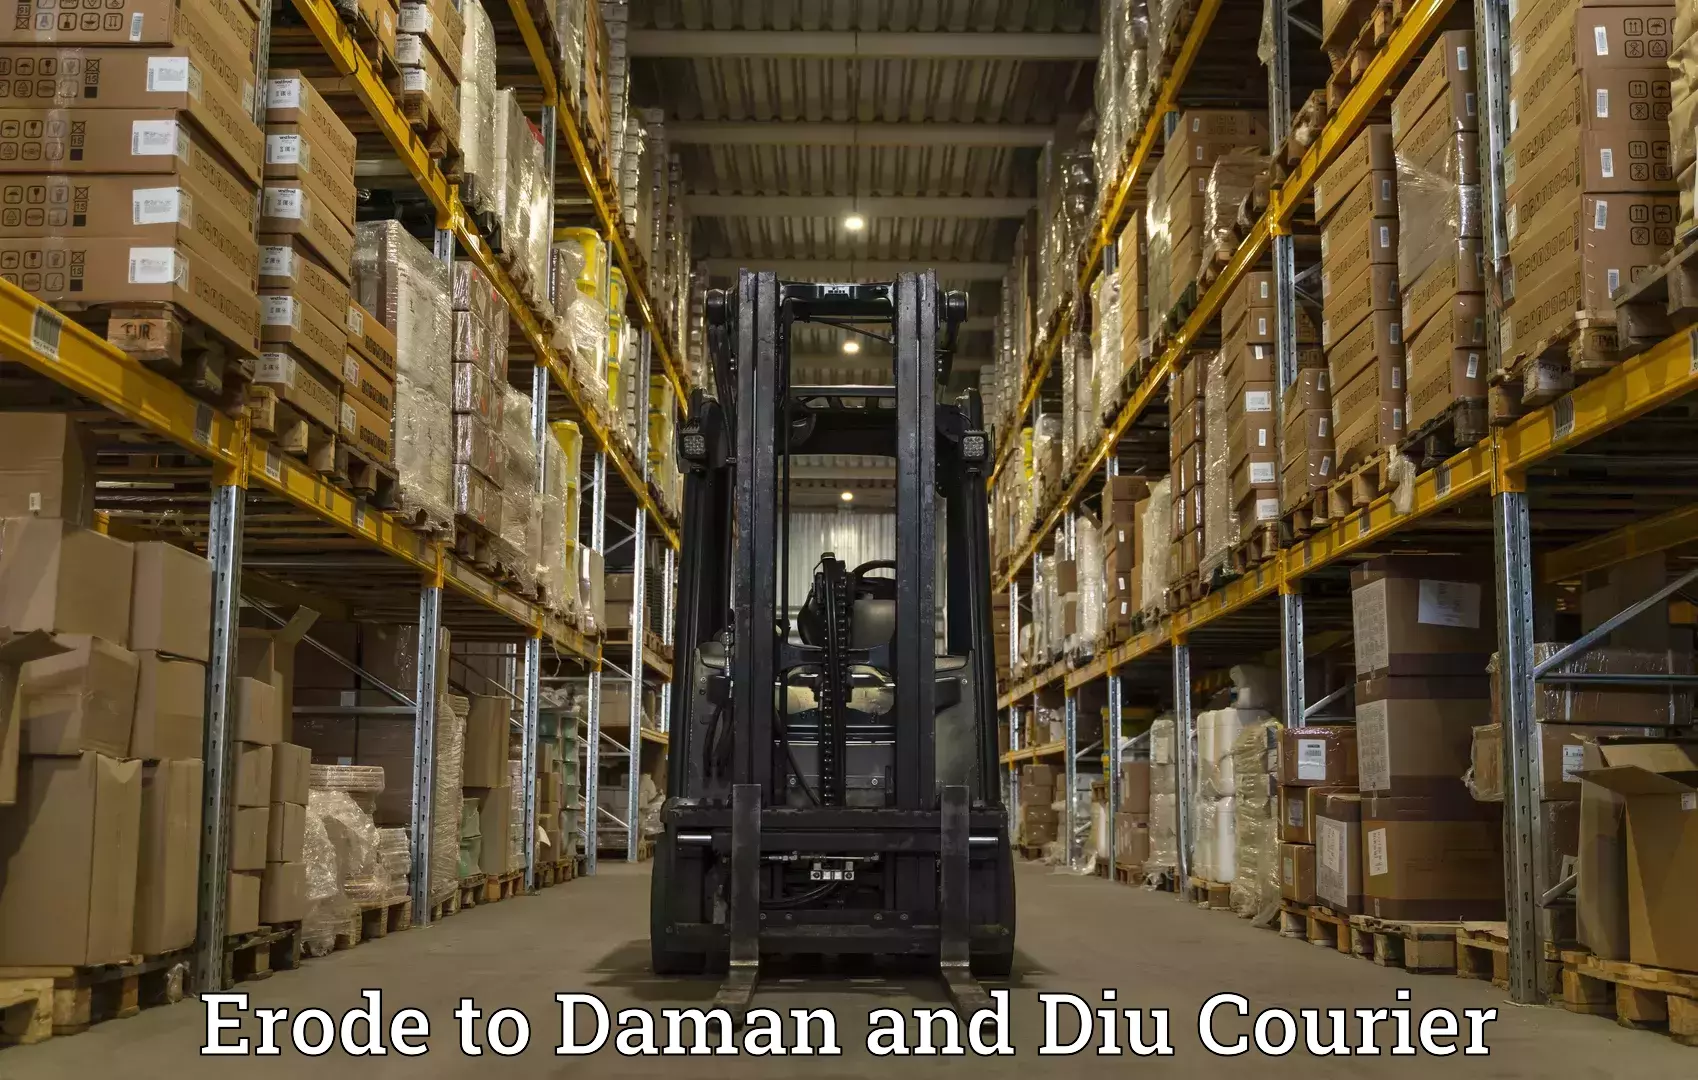 Express courier facilities Erode to Daman and Diu